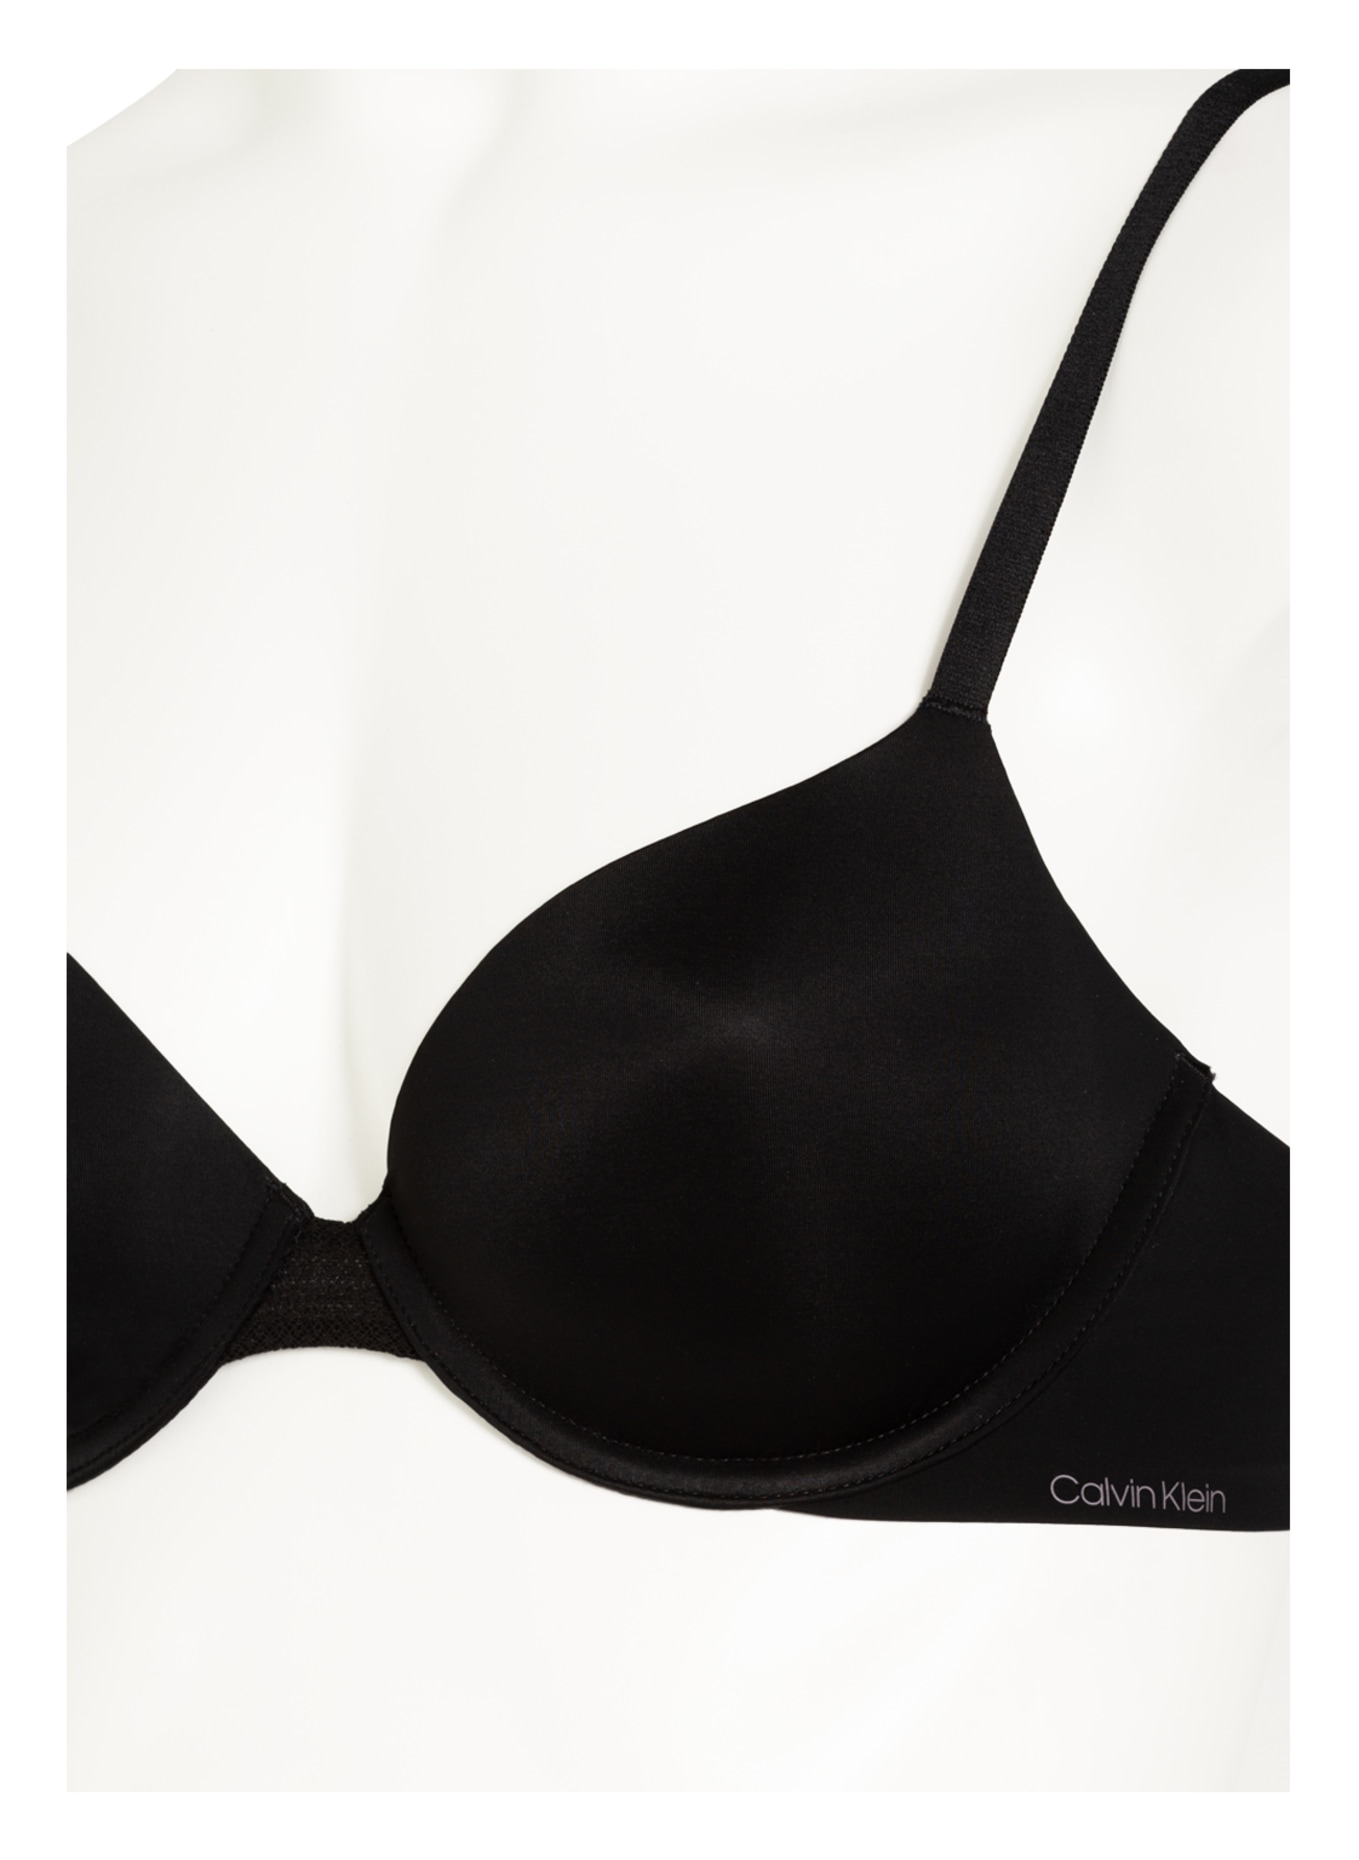 Calvin Klein Biustonosz usztywniany INFINITE FLEX , Kolor: CZARNY (Obrazek 5)